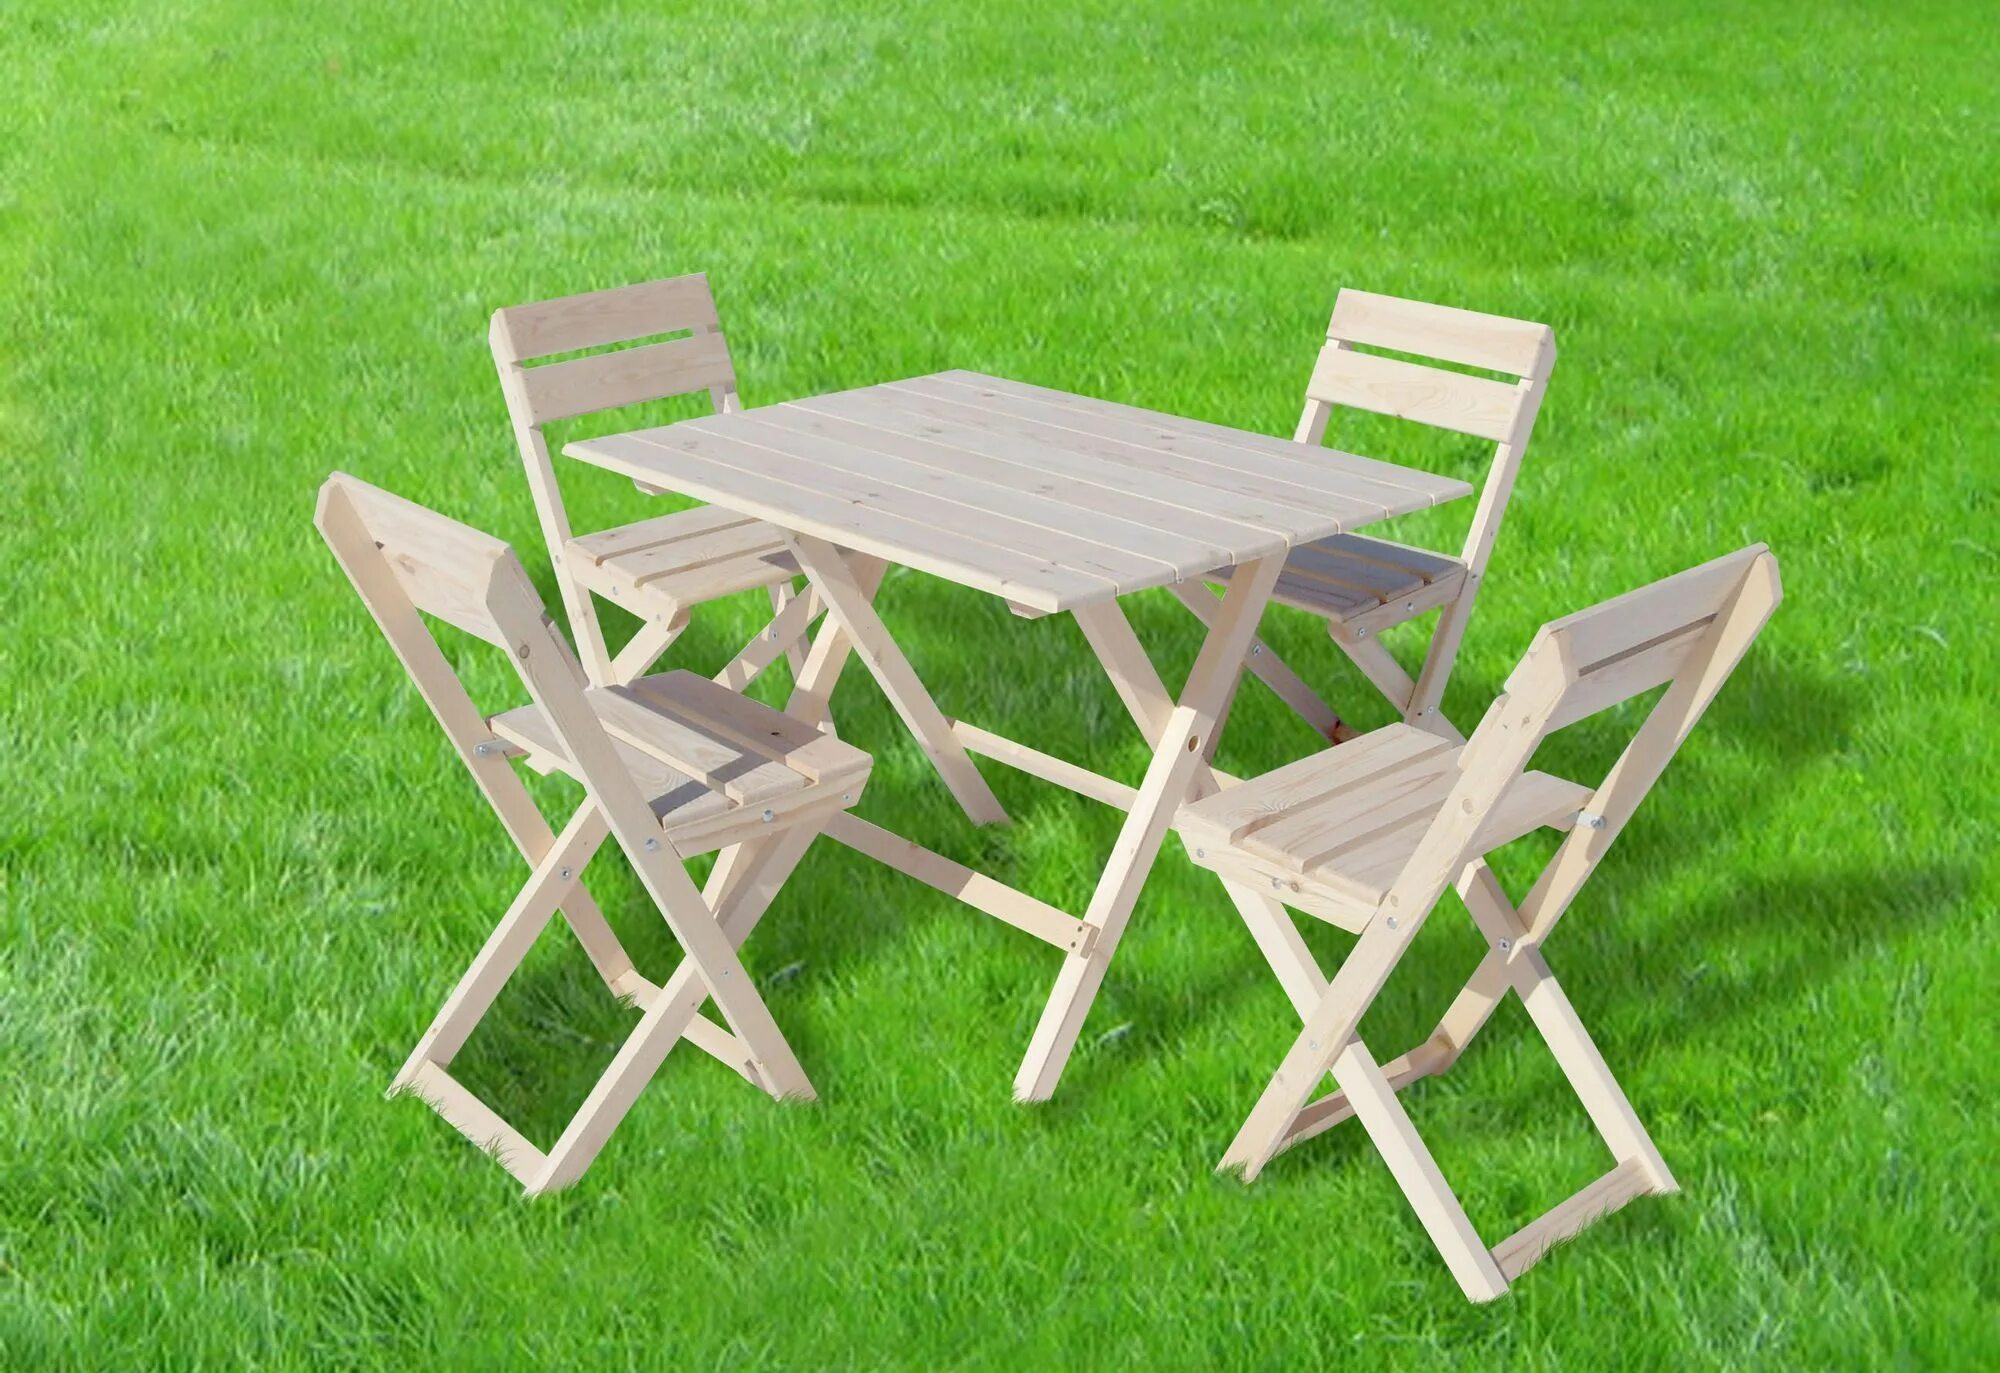 Наборы столов для пикника. Комплект садовой мебели(стол складной + 2 стула), дерево дуб. Набор мебели Алабия пикник. Набор мебели складной hq-m108. Садовый стол складной Vega 85.